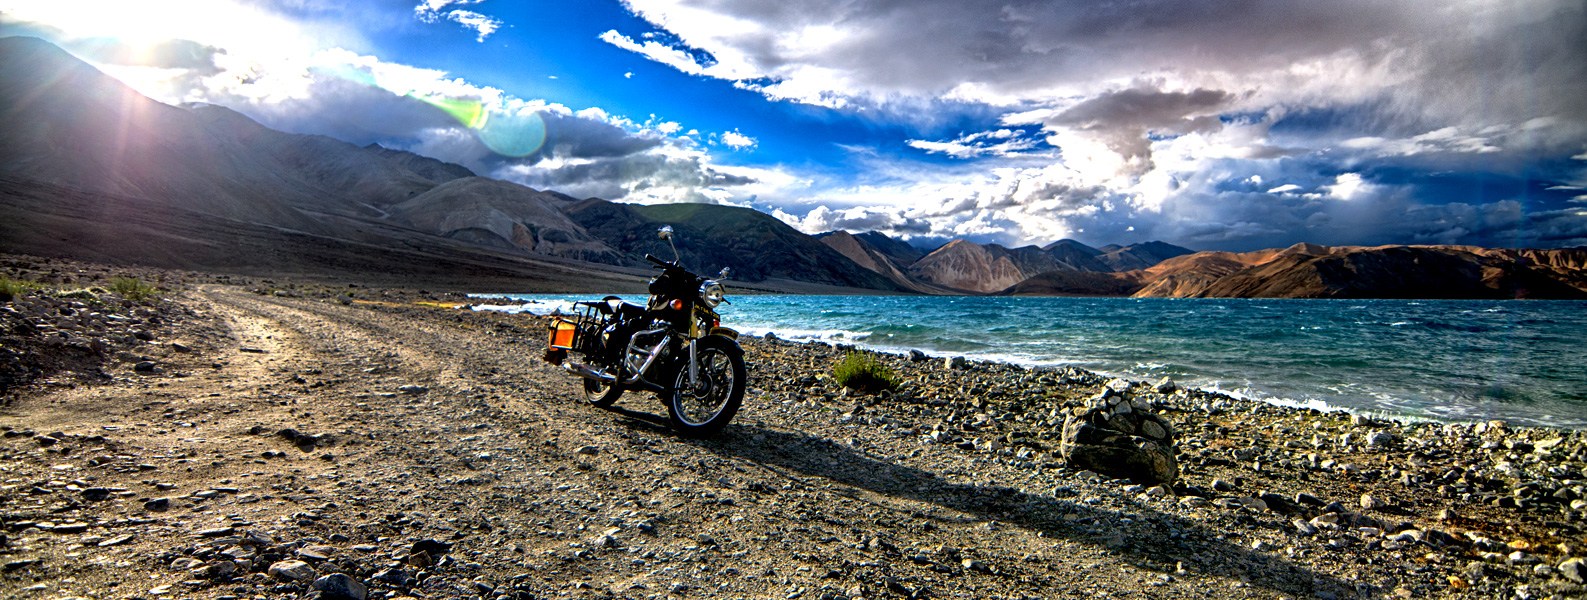 Bike Trip Leh Ladakh 2019, Jaipur, Rajasthan, India